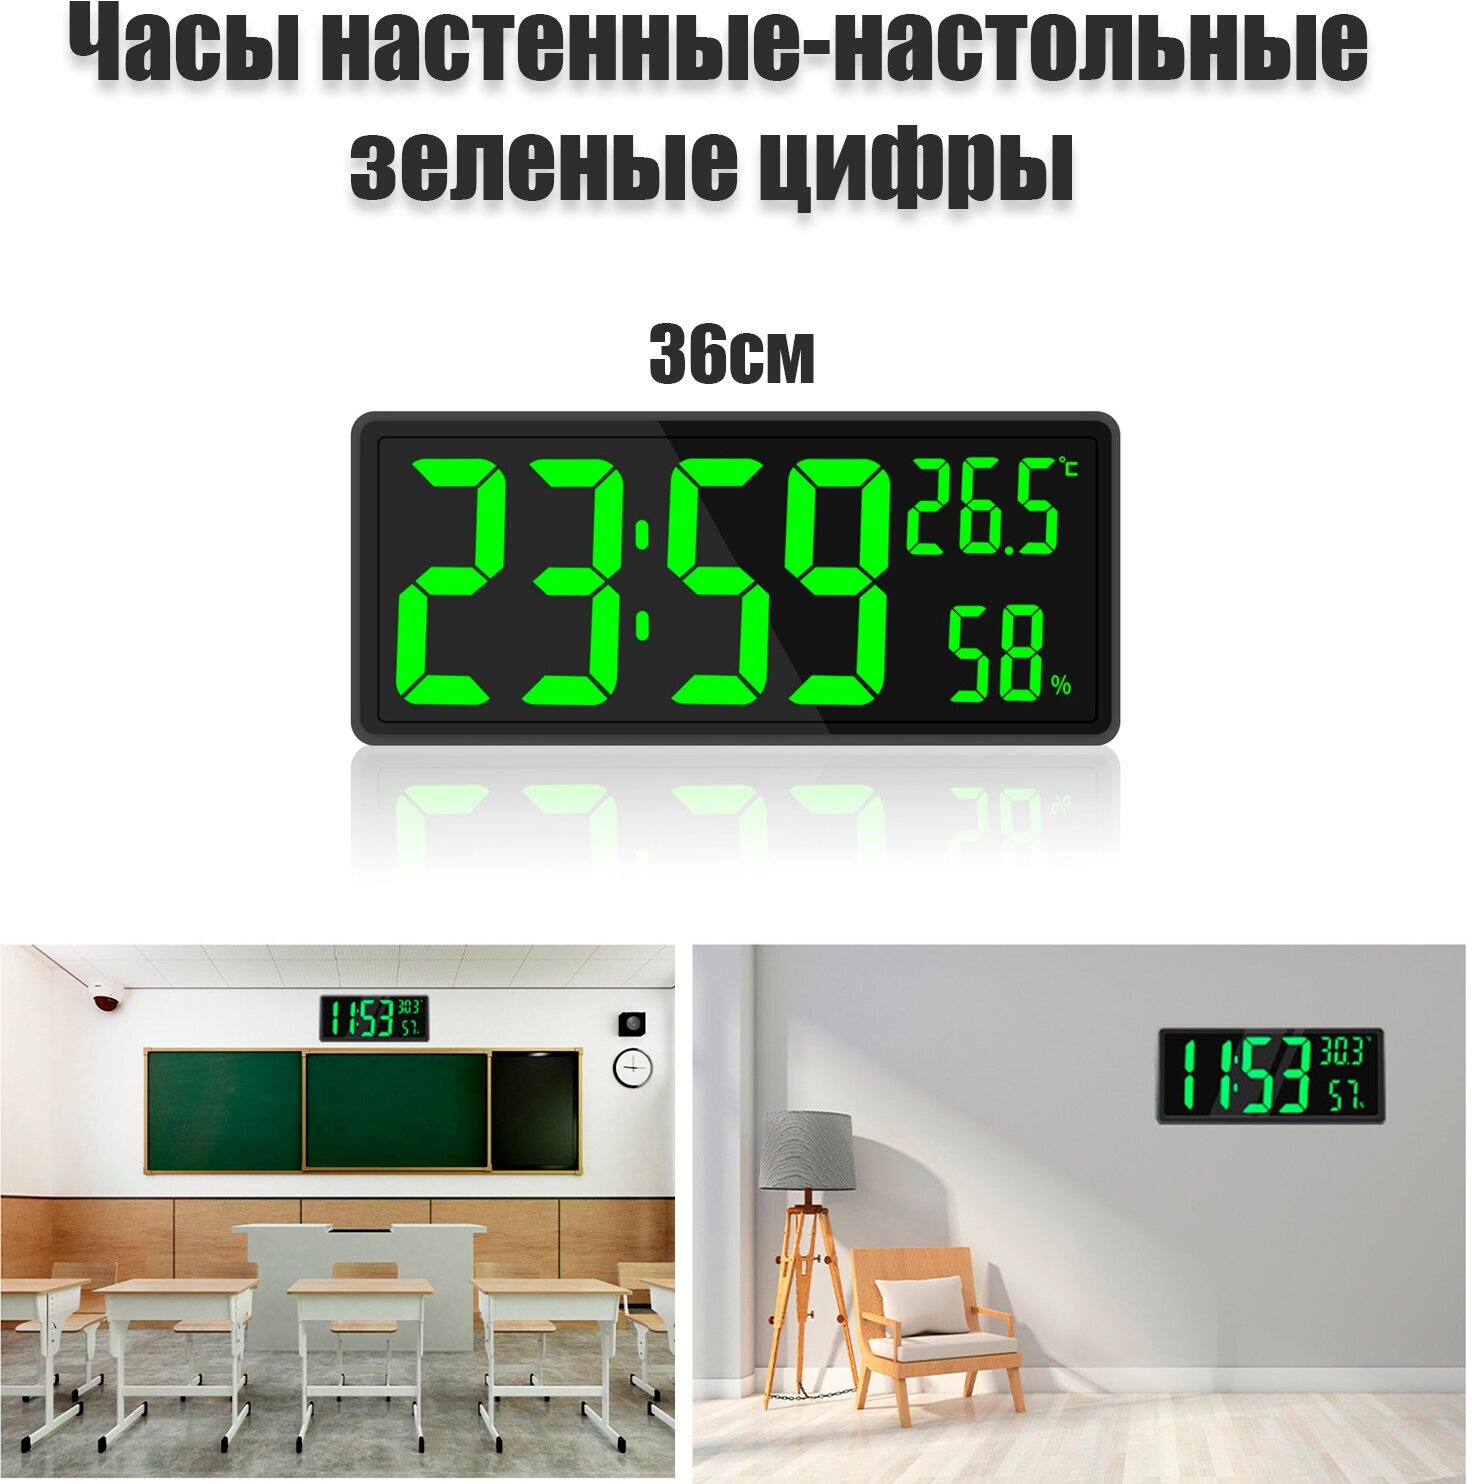 Часы настенные настольные 36 см. термометр гигрометр / черный корпус зеленые цифры